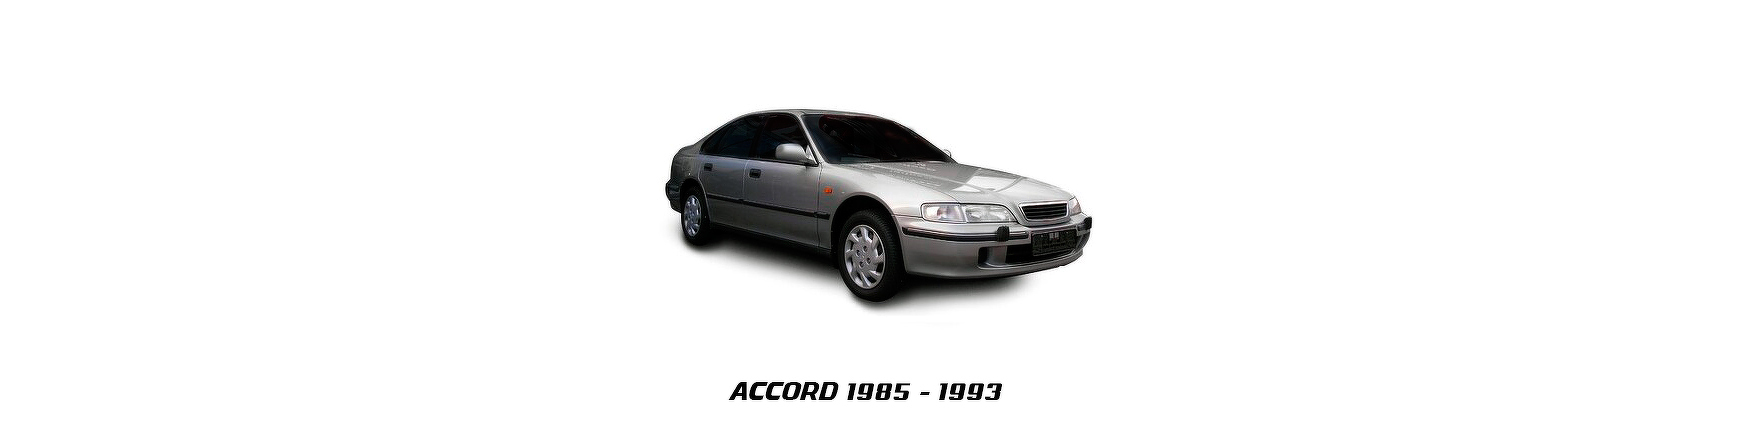 Piezas y Recambios de Honda Accord de 1993 a 1998 | Veramauto.es